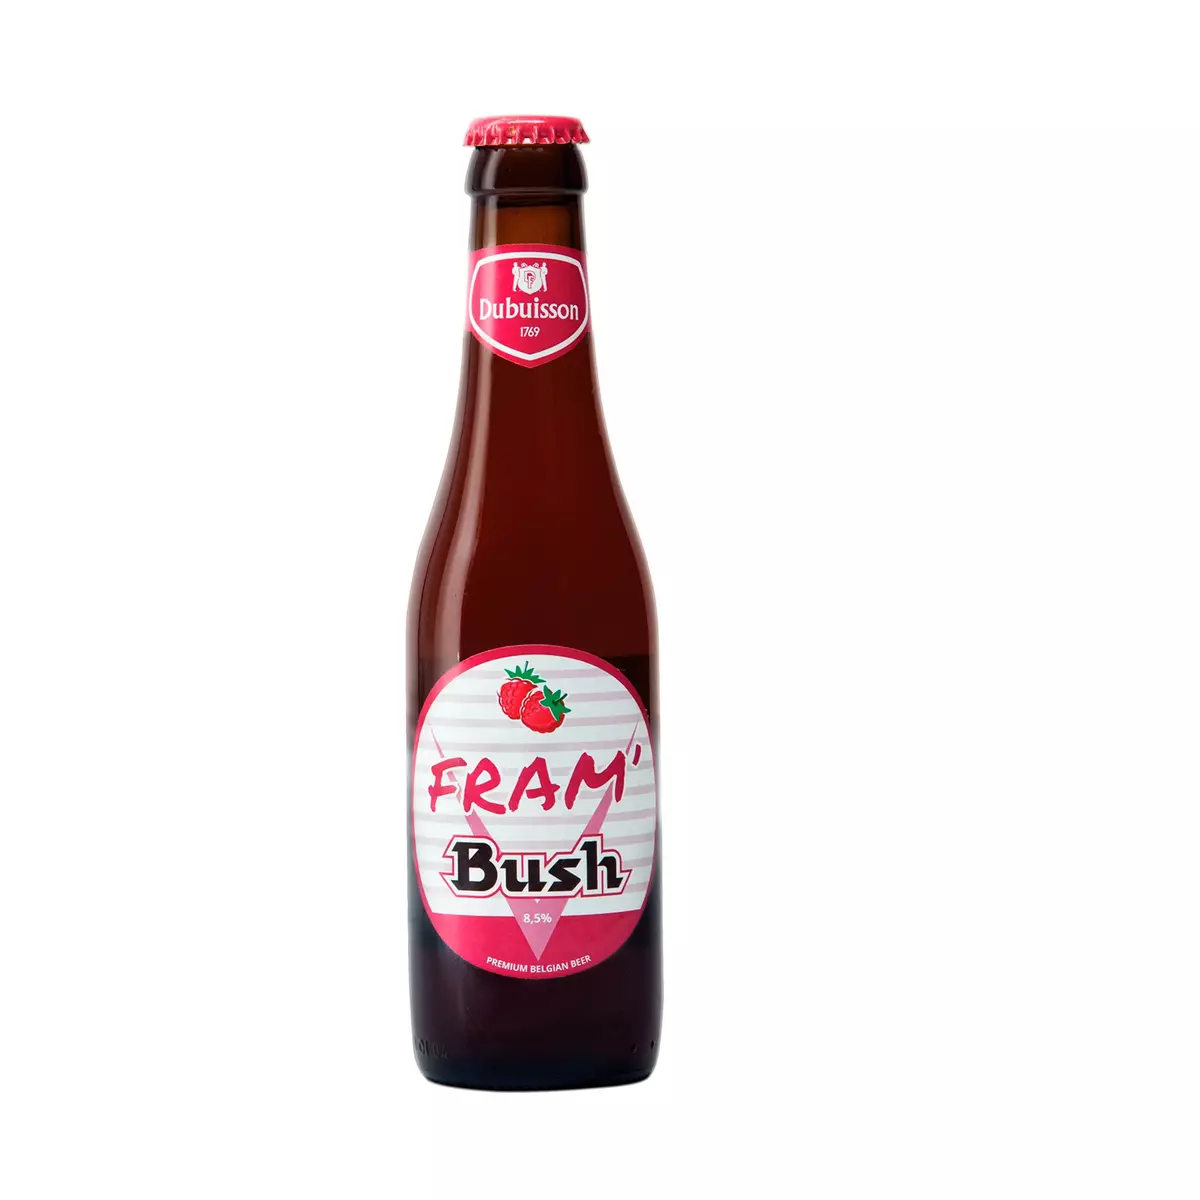 FRAM Bush Bière Belge 8.5% 33cl